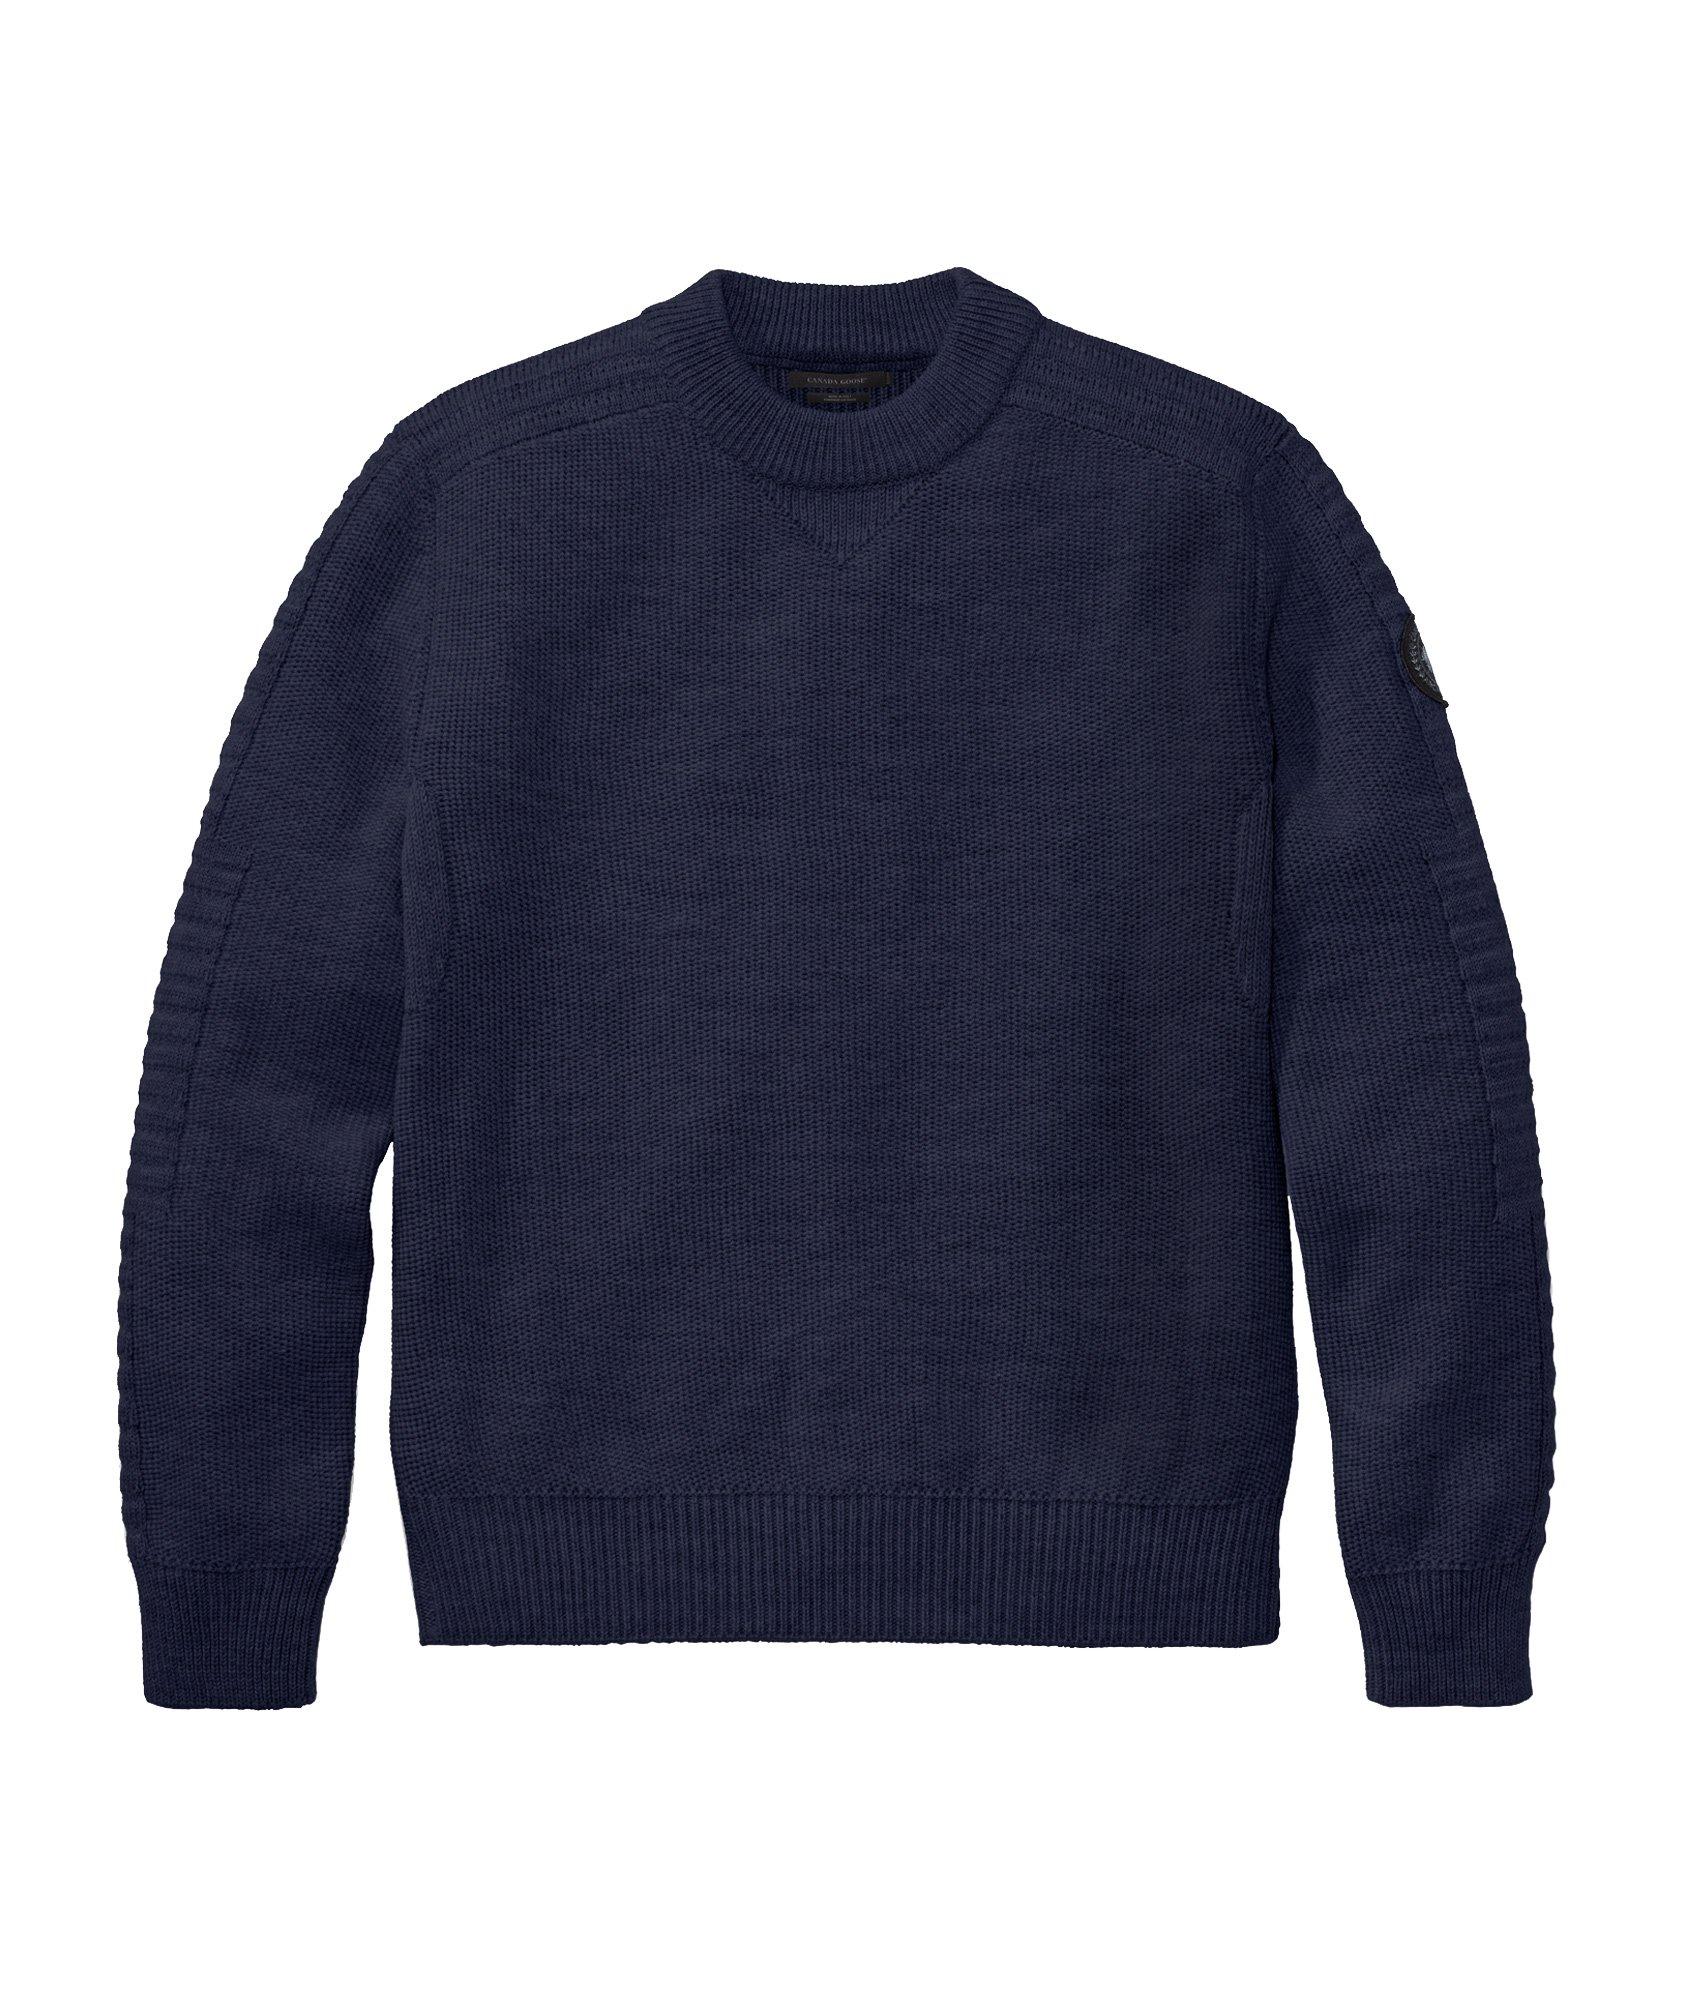 Patterson Merino Wool Sweater image 0